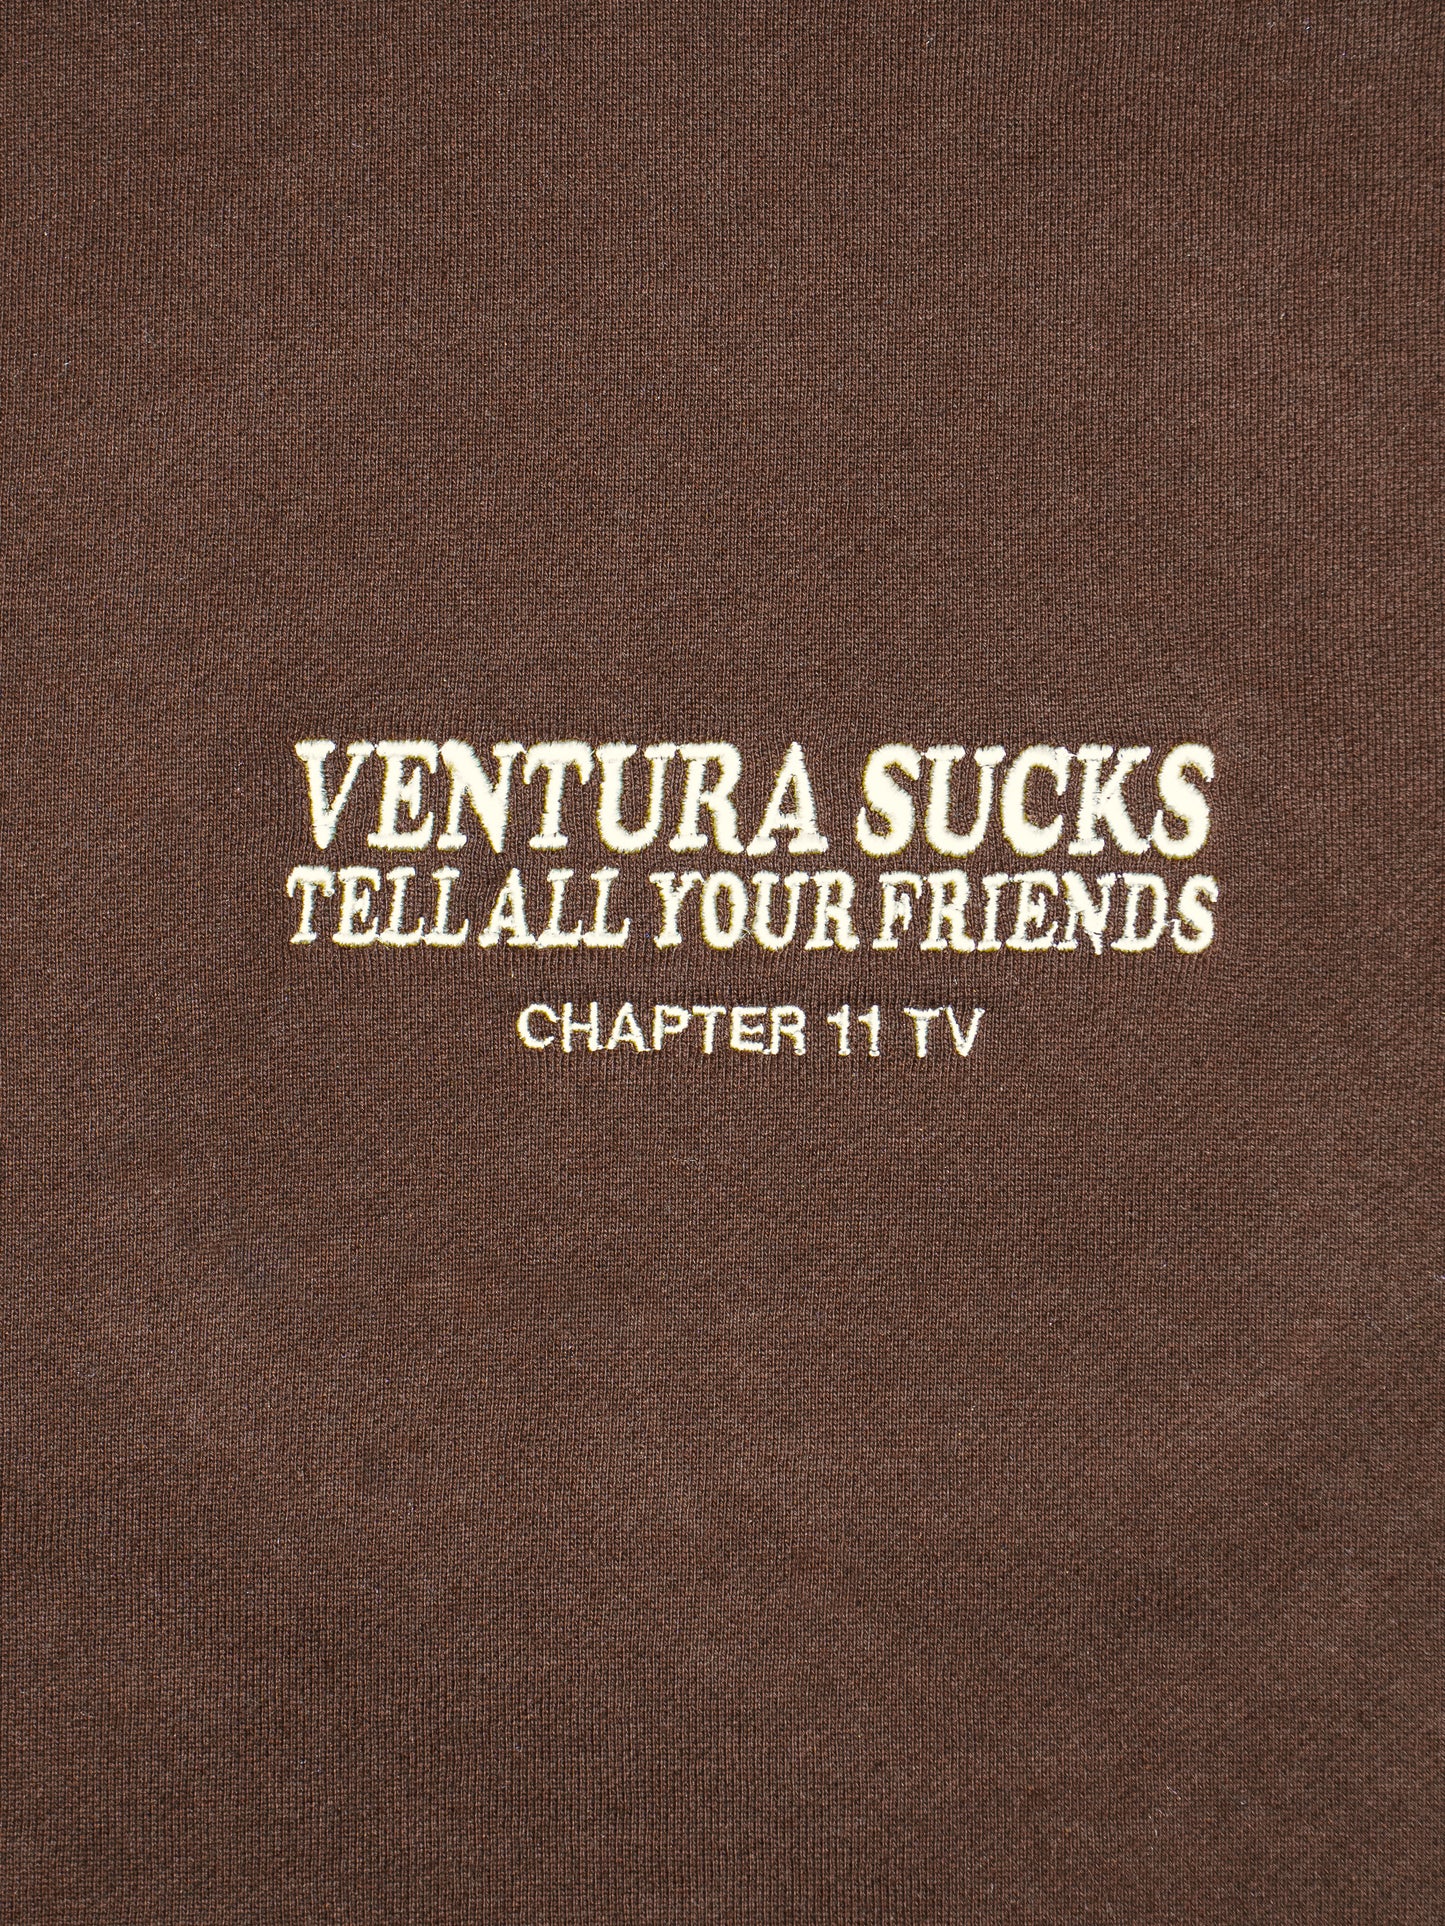 Ventura Sucks Pullover